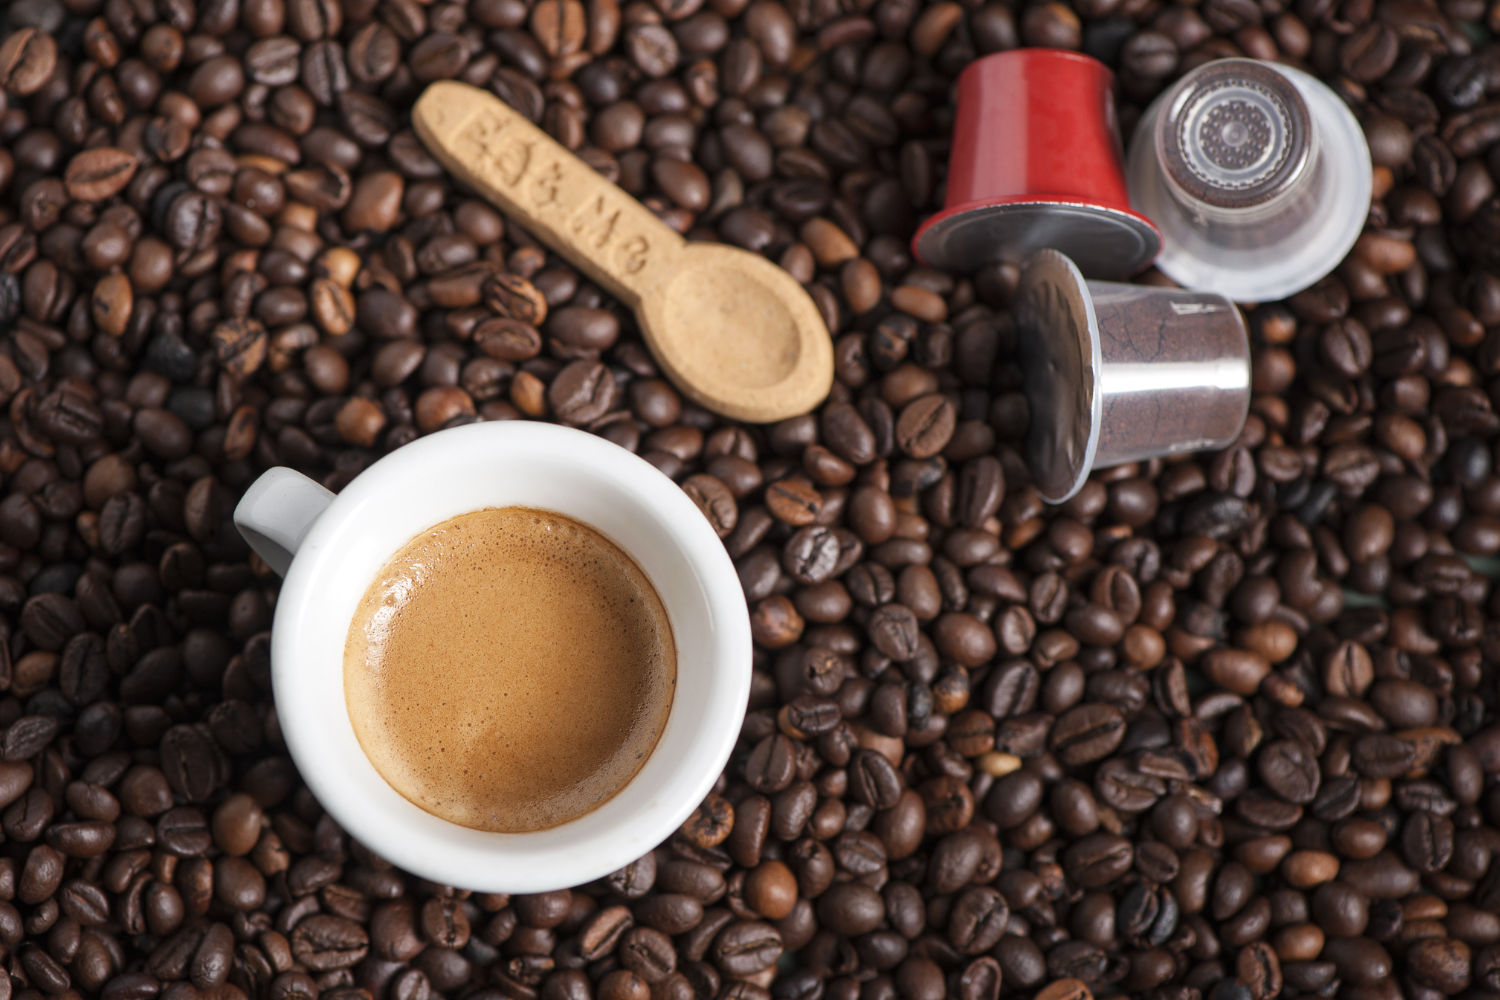 Capsule compatibili Nespresso Caffè Excelso Colombia 100% Arabica Supremo,  10pz